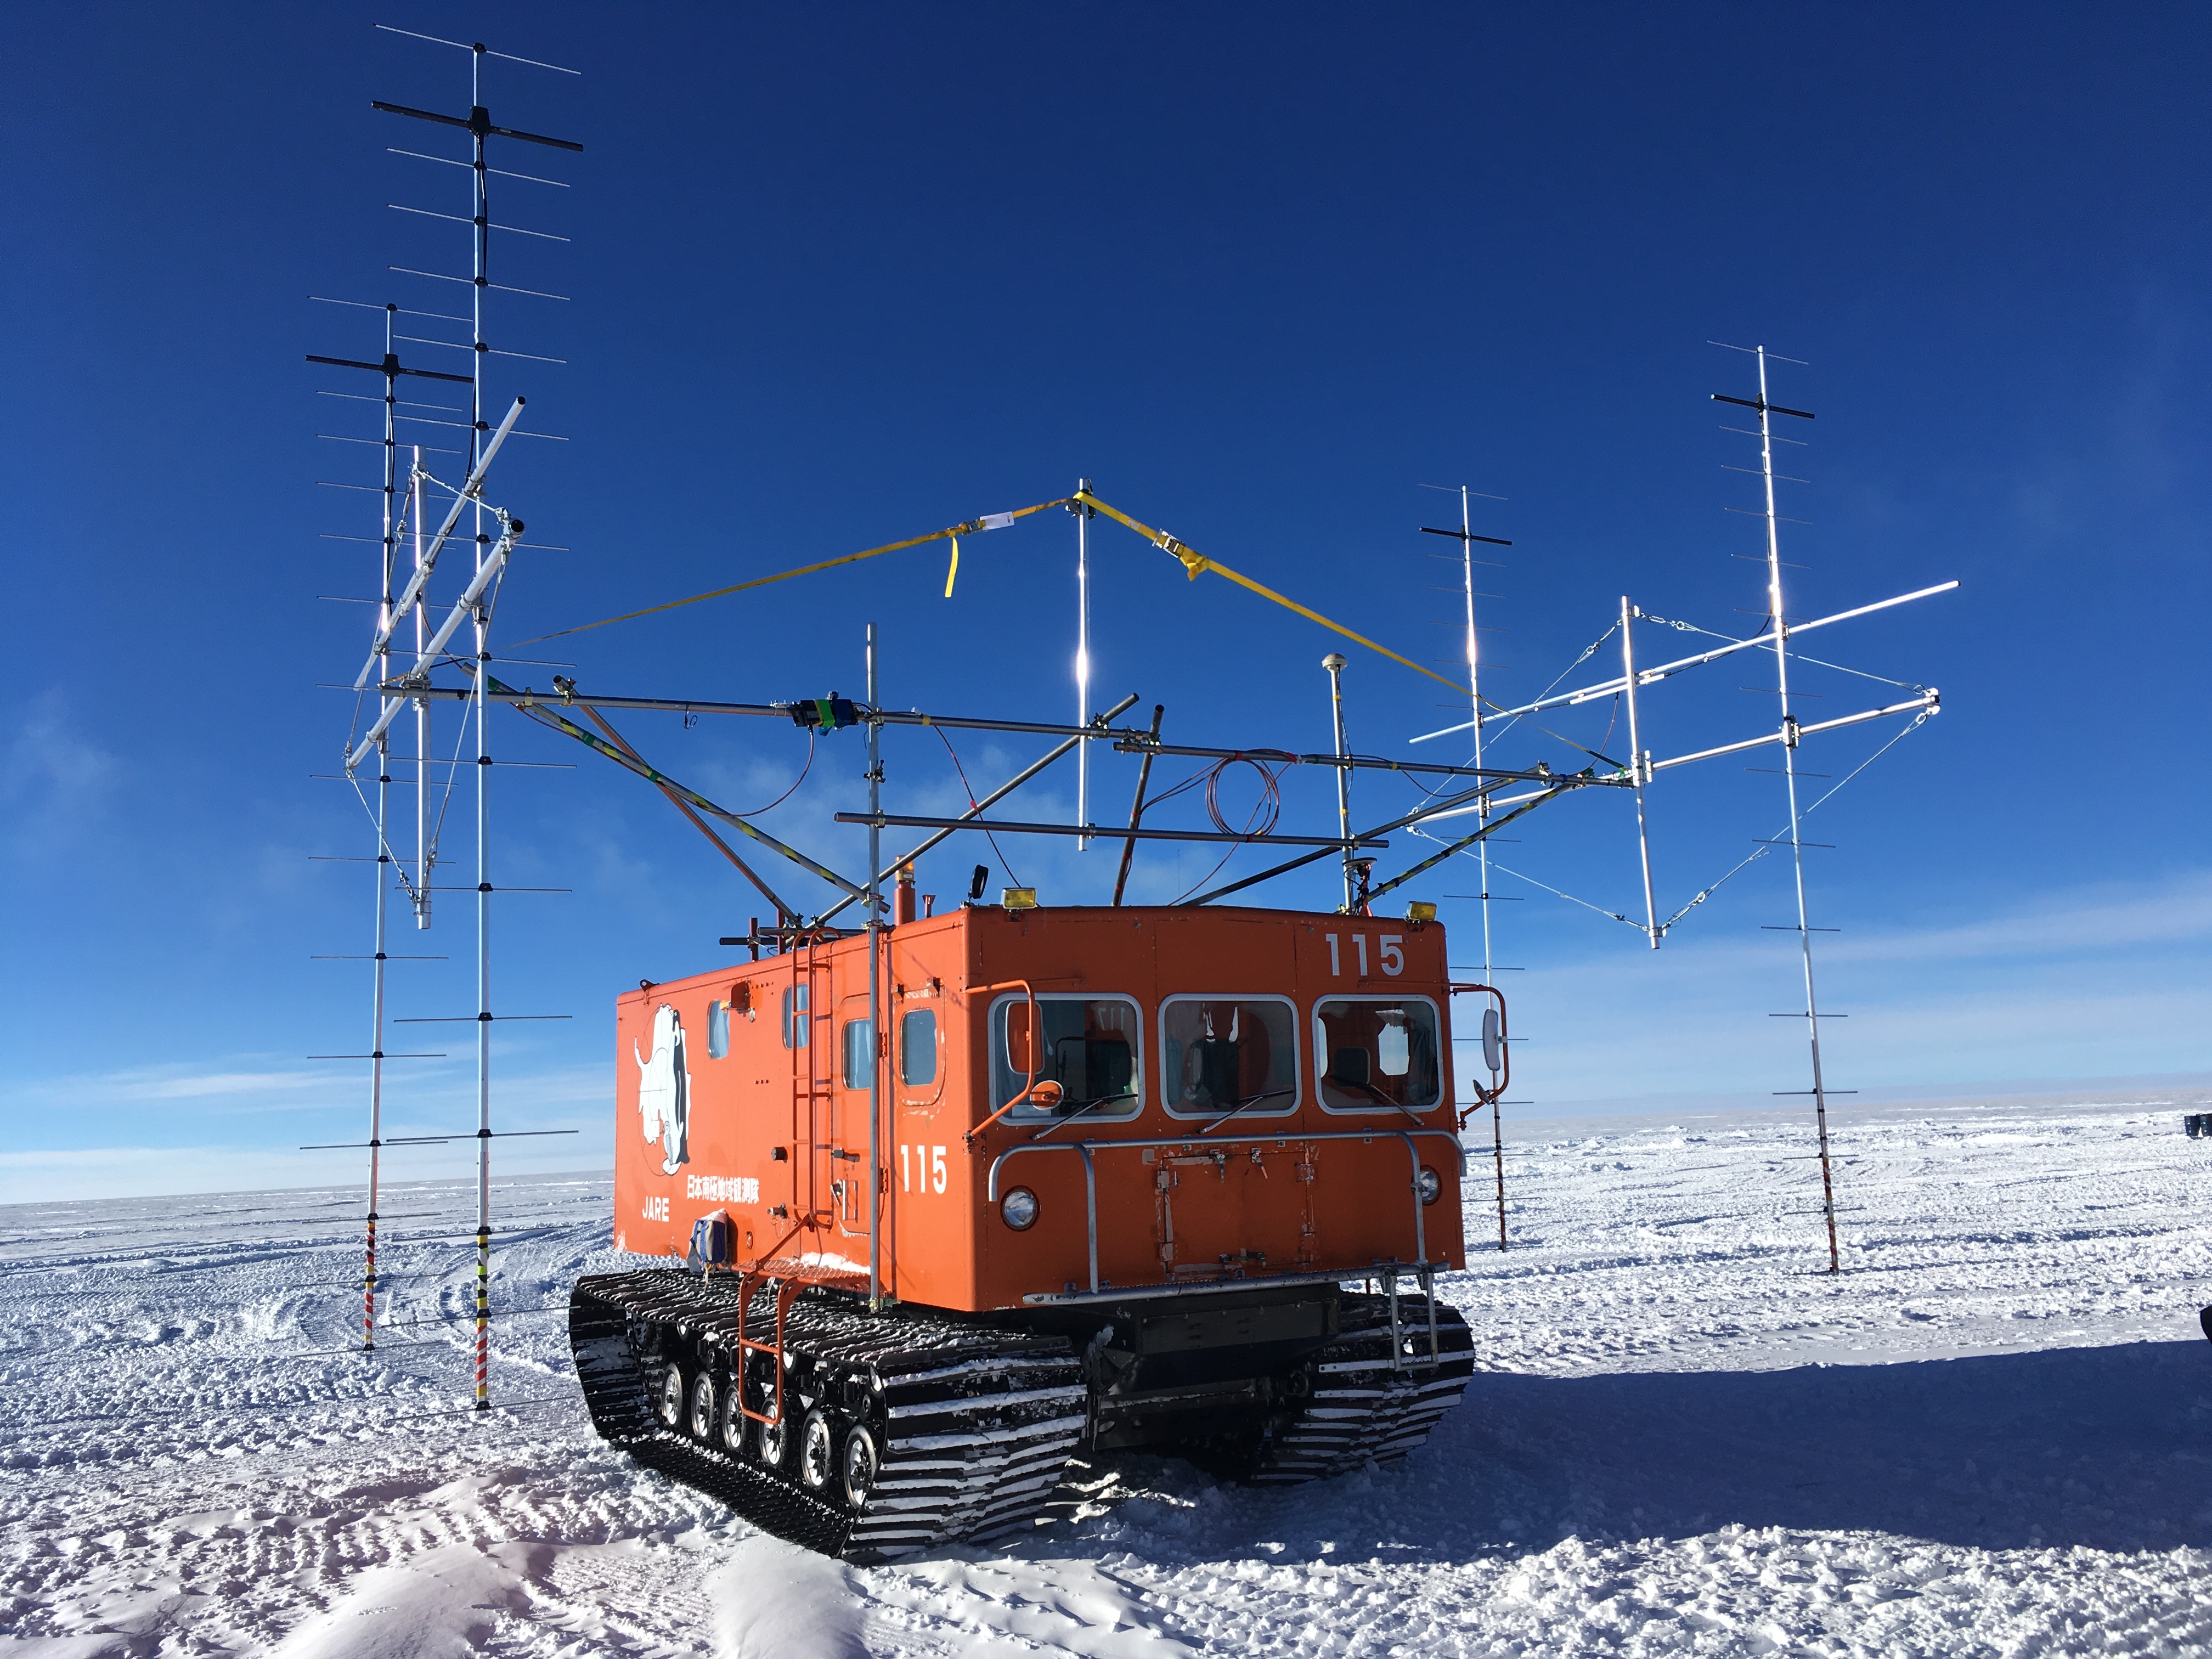 図1： レーダアンテナを搭載した雪上車。国立極地研究所 藤田秀二教授撮影。の画像